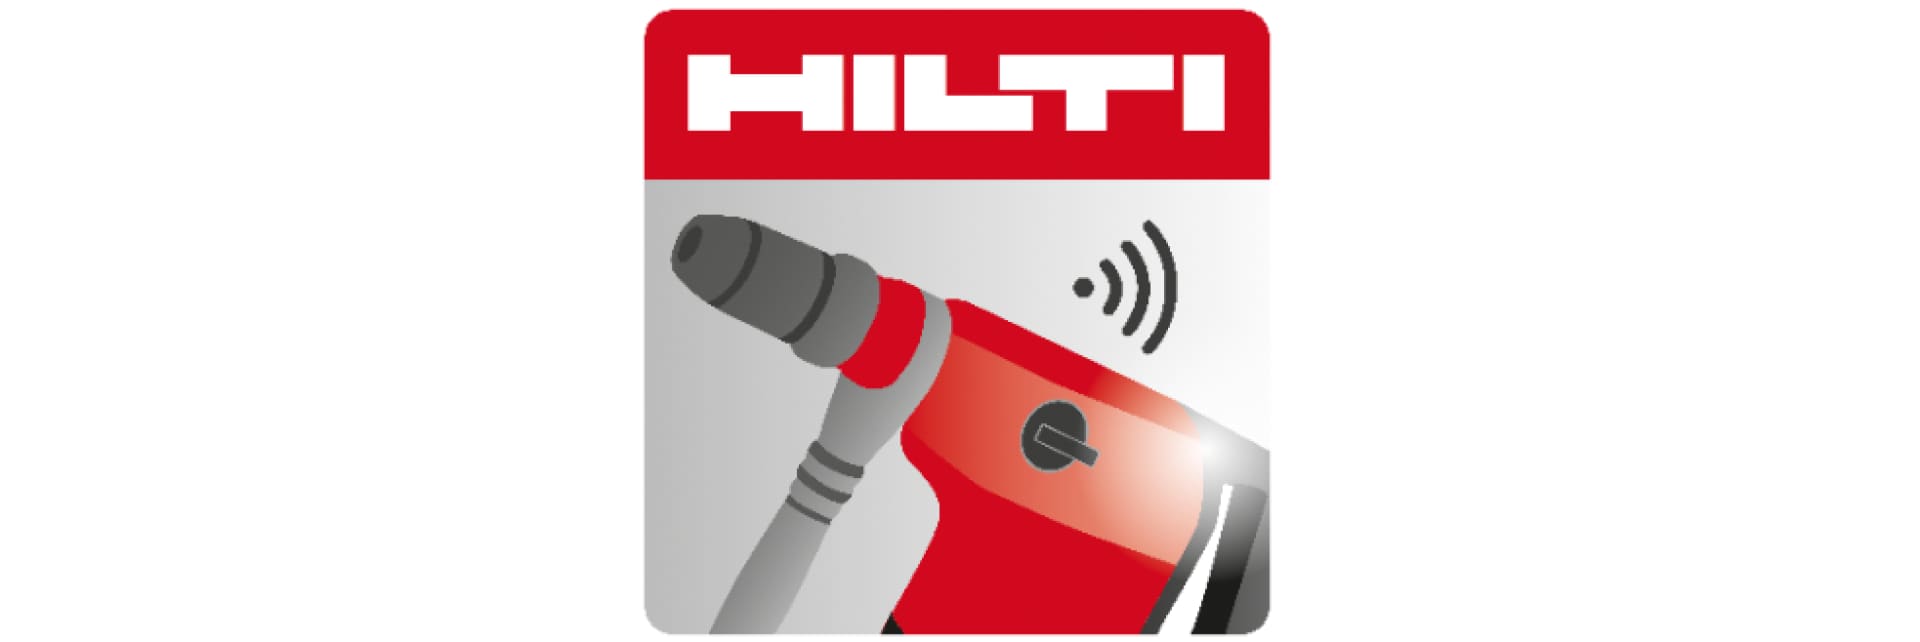 Hilti Connect